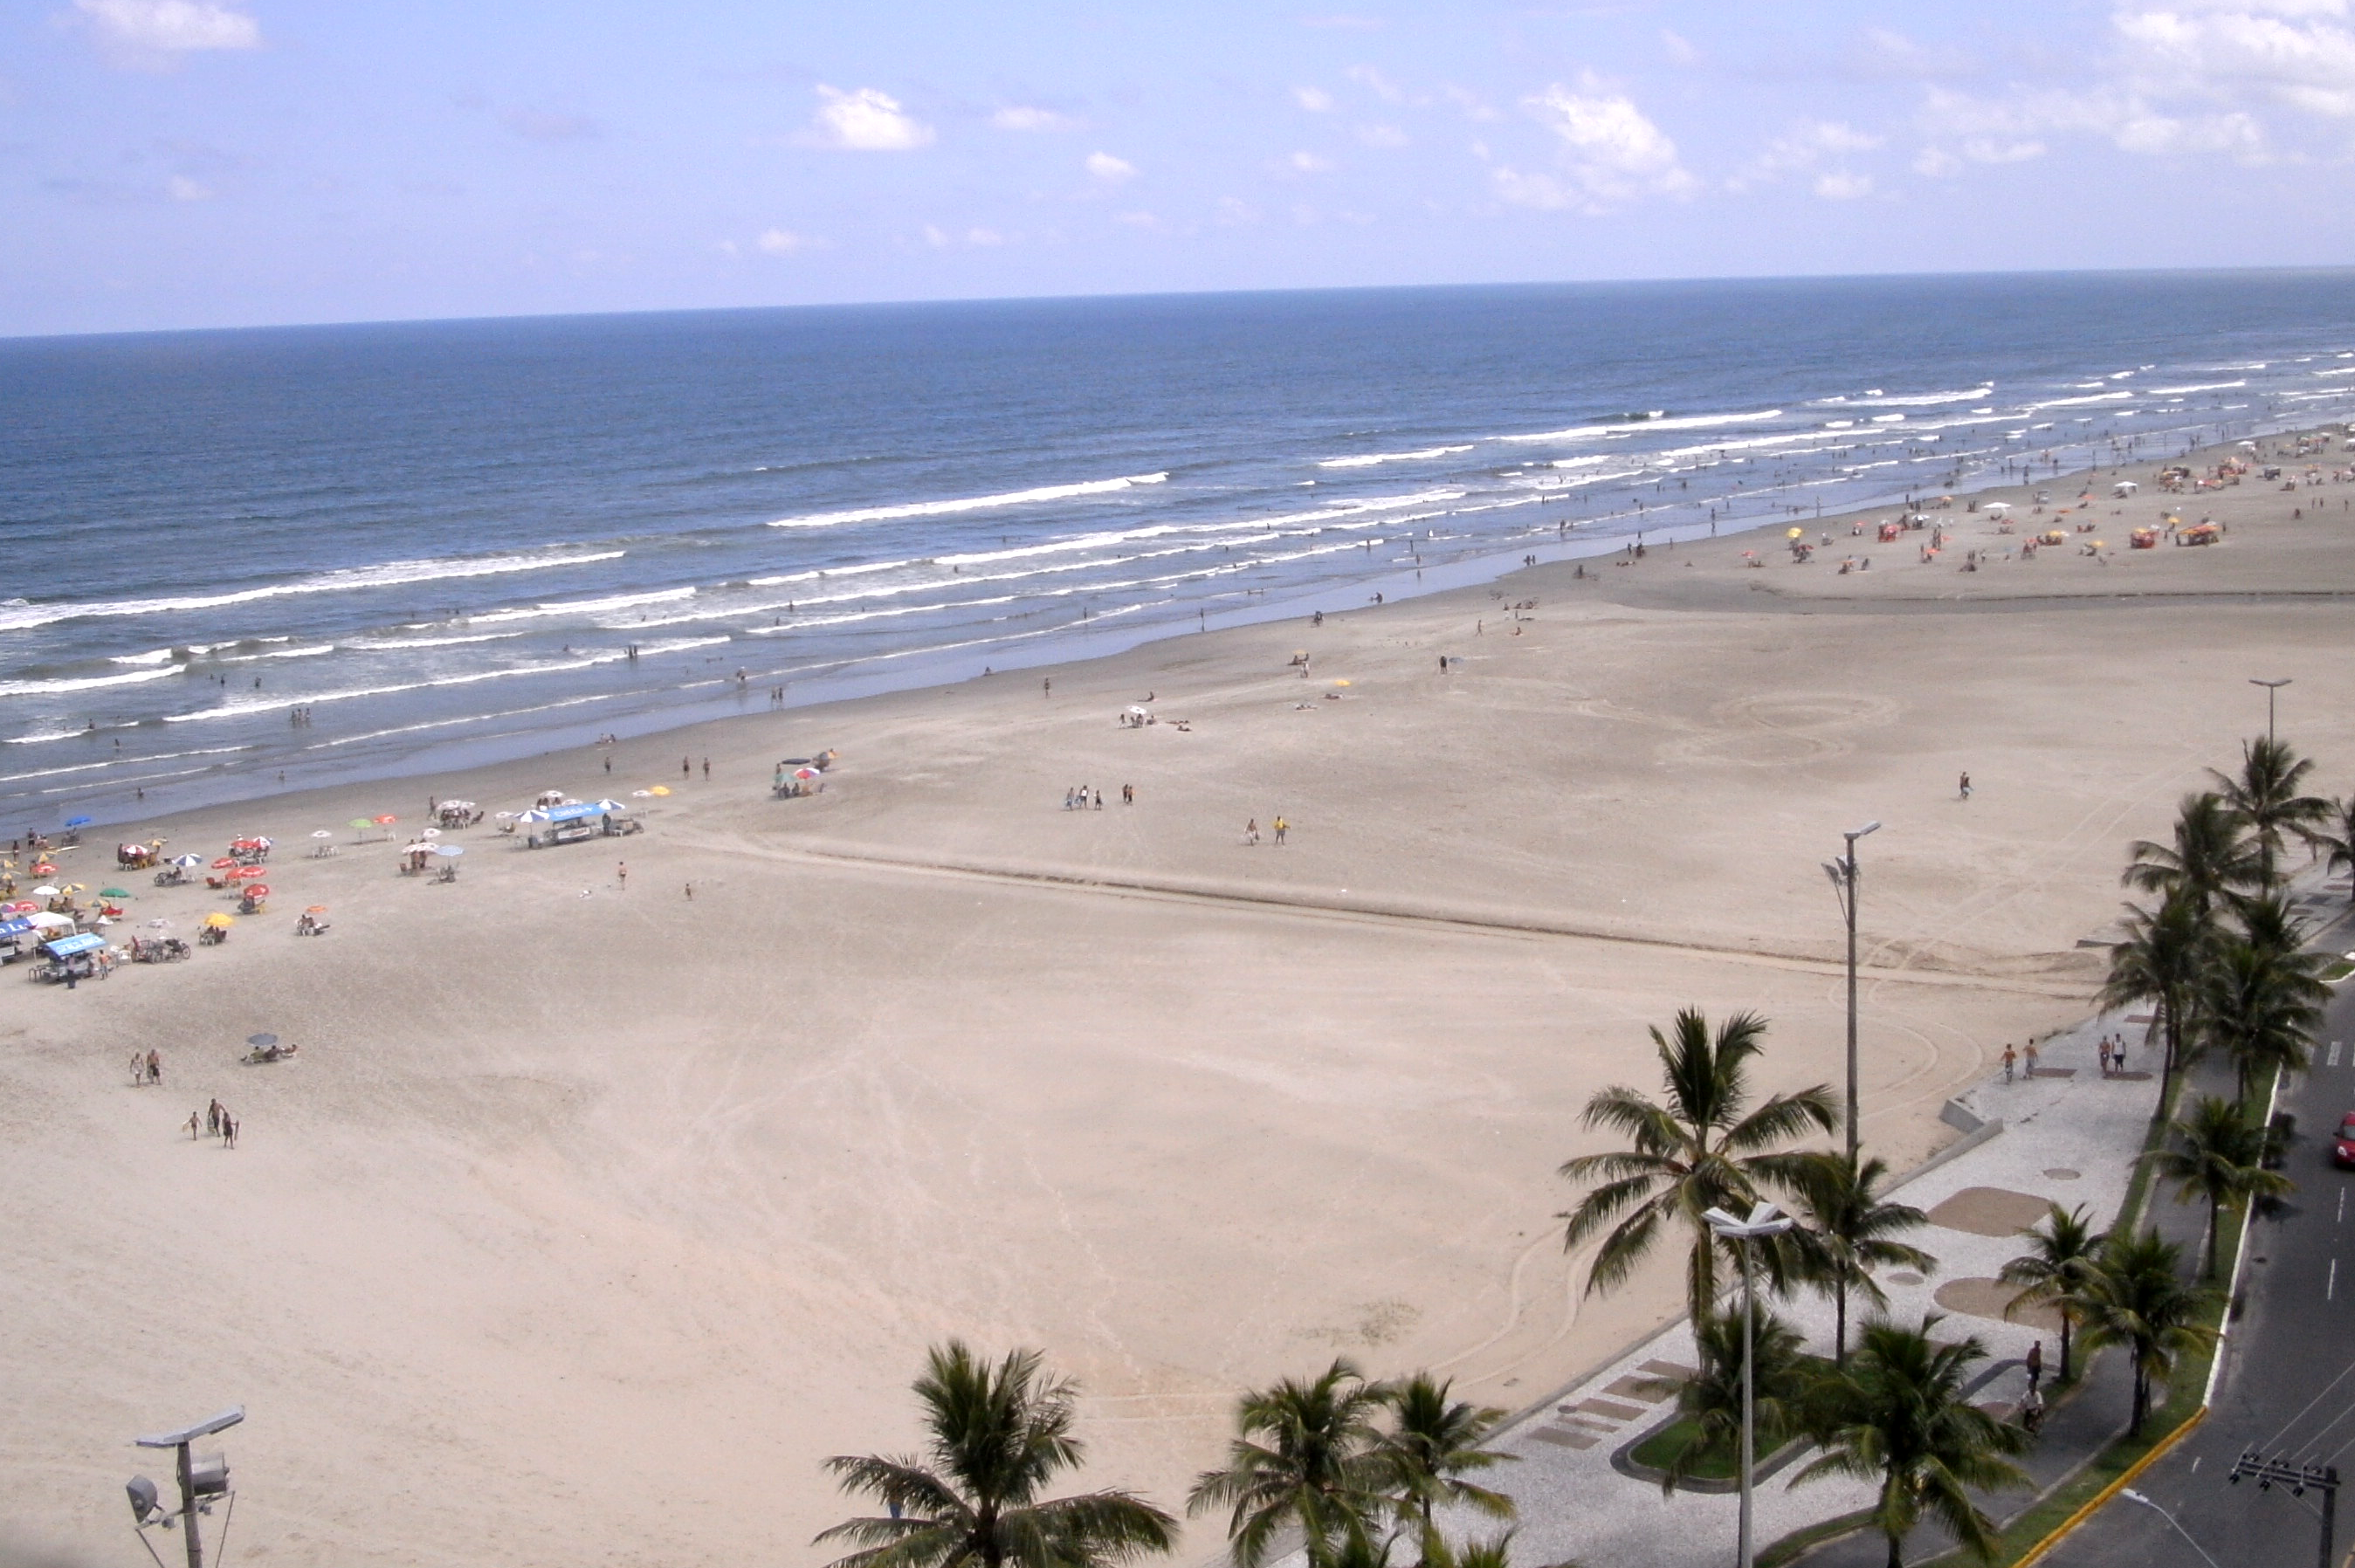 A view of Praia Grande, São Paulo area, Brazil